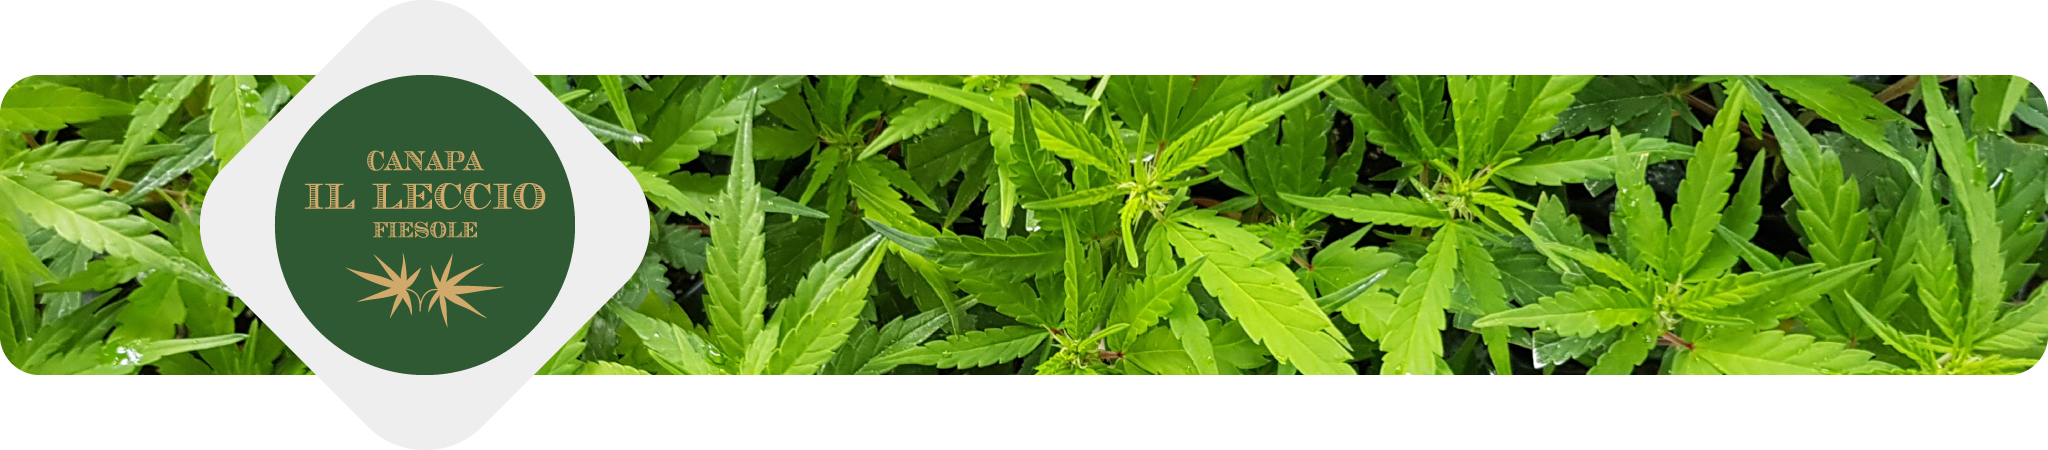 canapa-il-leccio-erba-legale-weediamo-cannabis-delivery-firenze-produttore-locale